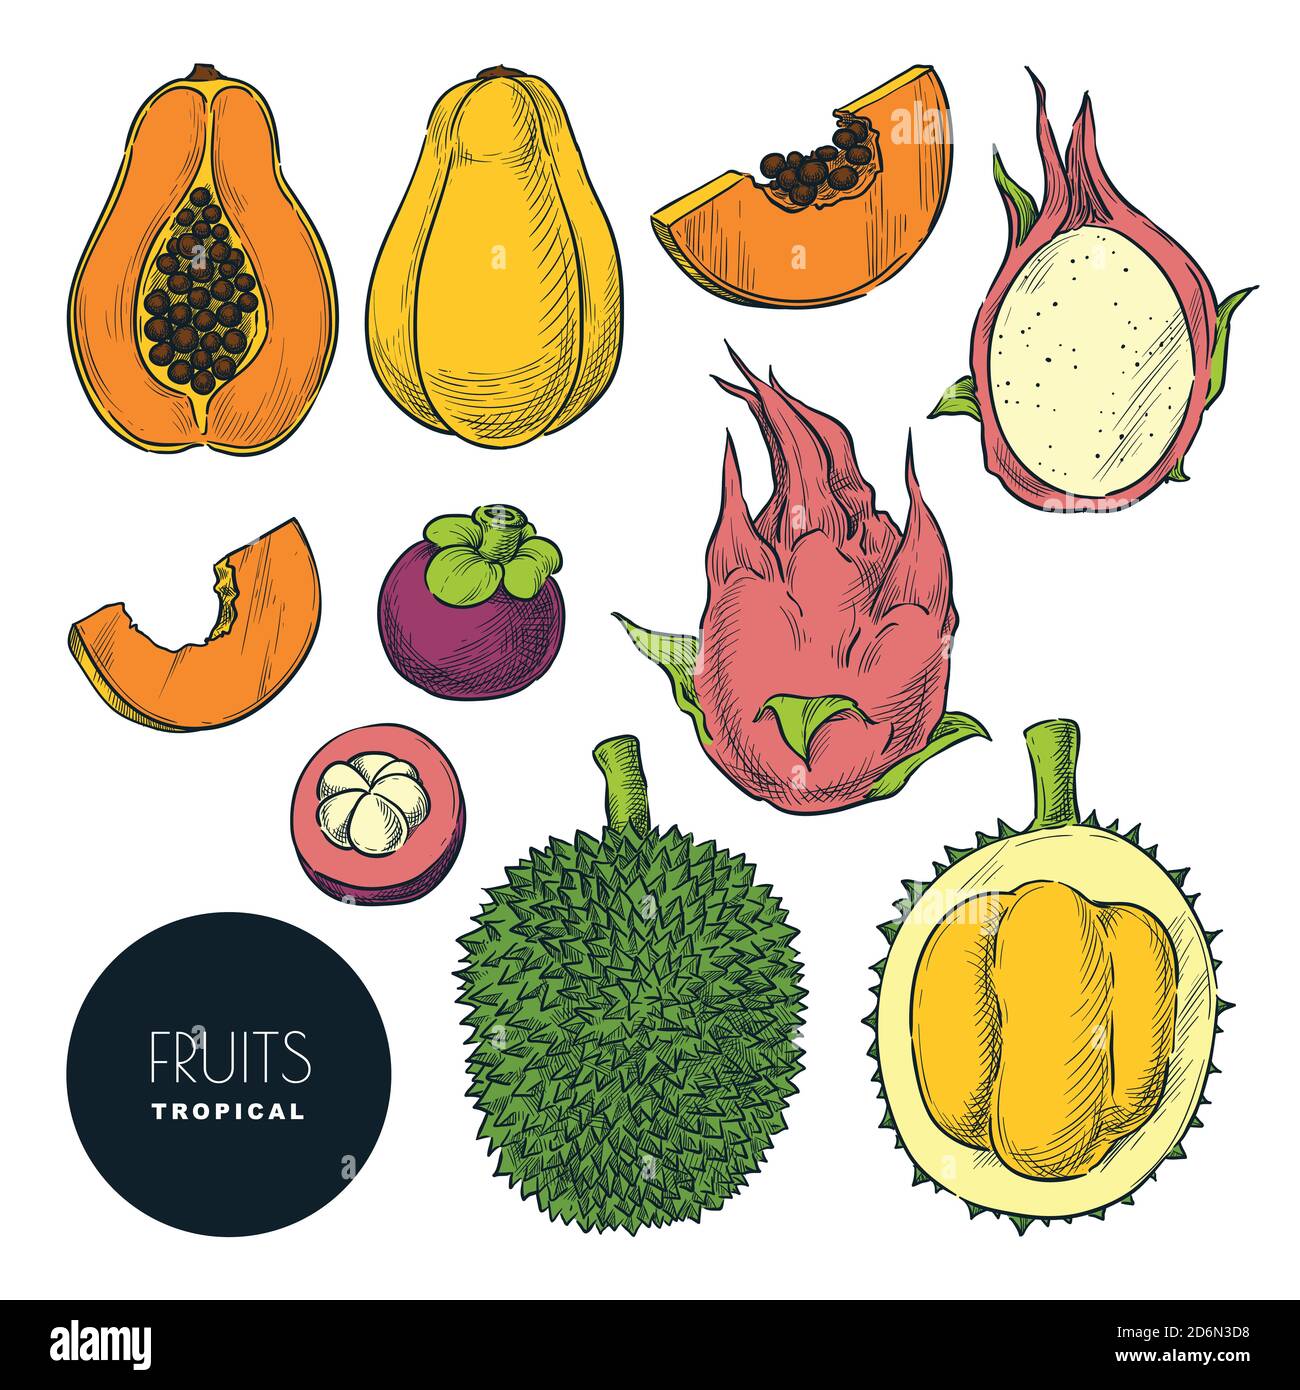 Tropische Früchte isoliert auf weißem Hintergrund. Vektorfarbe Skizze Illustration und Design-Elemente gesetzt. Handgezeichnete tropisch leckere Lebensmittel. Stock Vektor